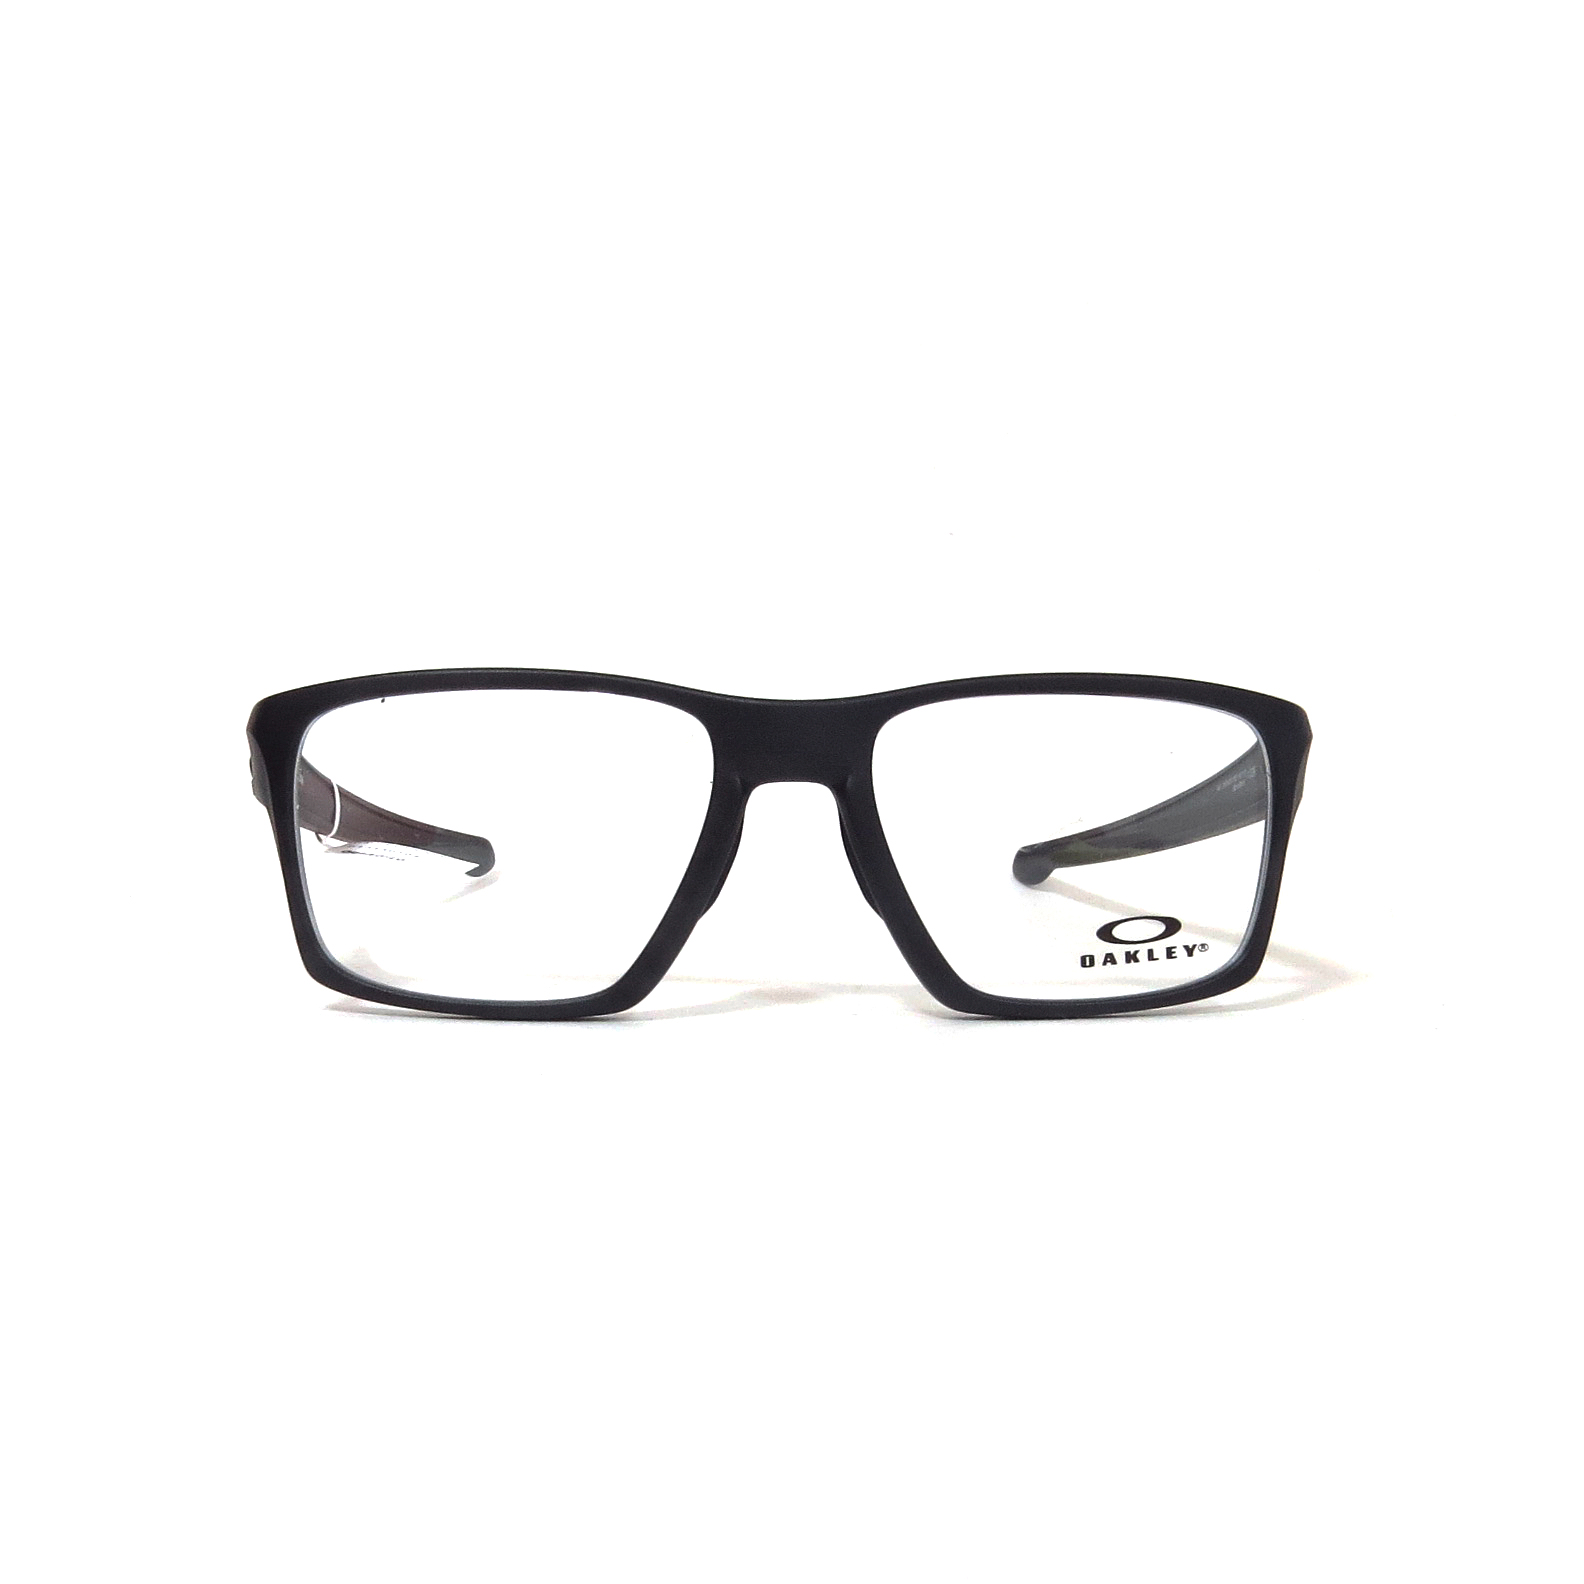 las gafas | OAKLEY - 8140 - Óptica las gafas